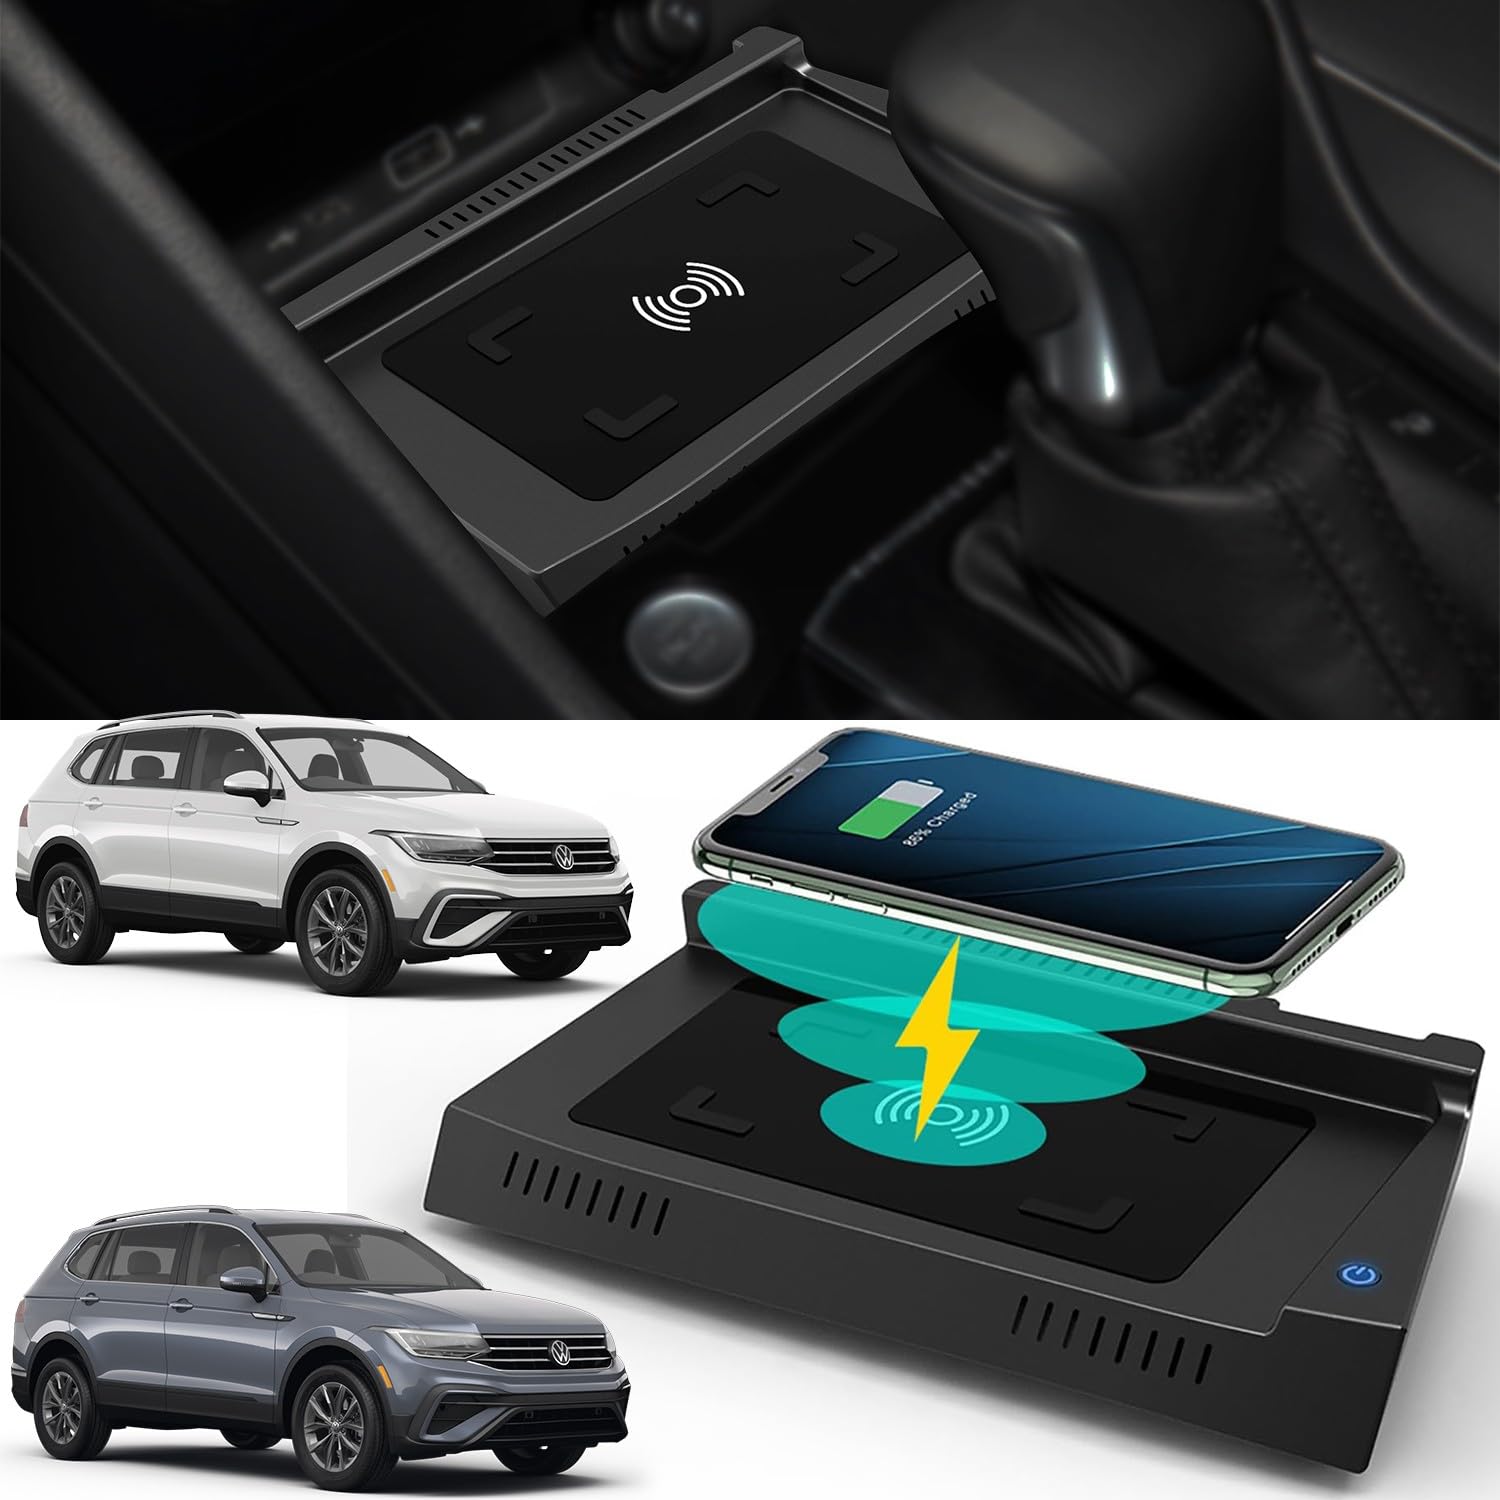 Braveking1 Kabelloses Ladegerät Auto für Volkswagen Tiguan 2023 2022 2021 2020 2019 2018 2017, Wireless Schnellladendes Handy-Ladegerät für VW Tiguan Center Console-Zubehörfeld für iPhone Samsung